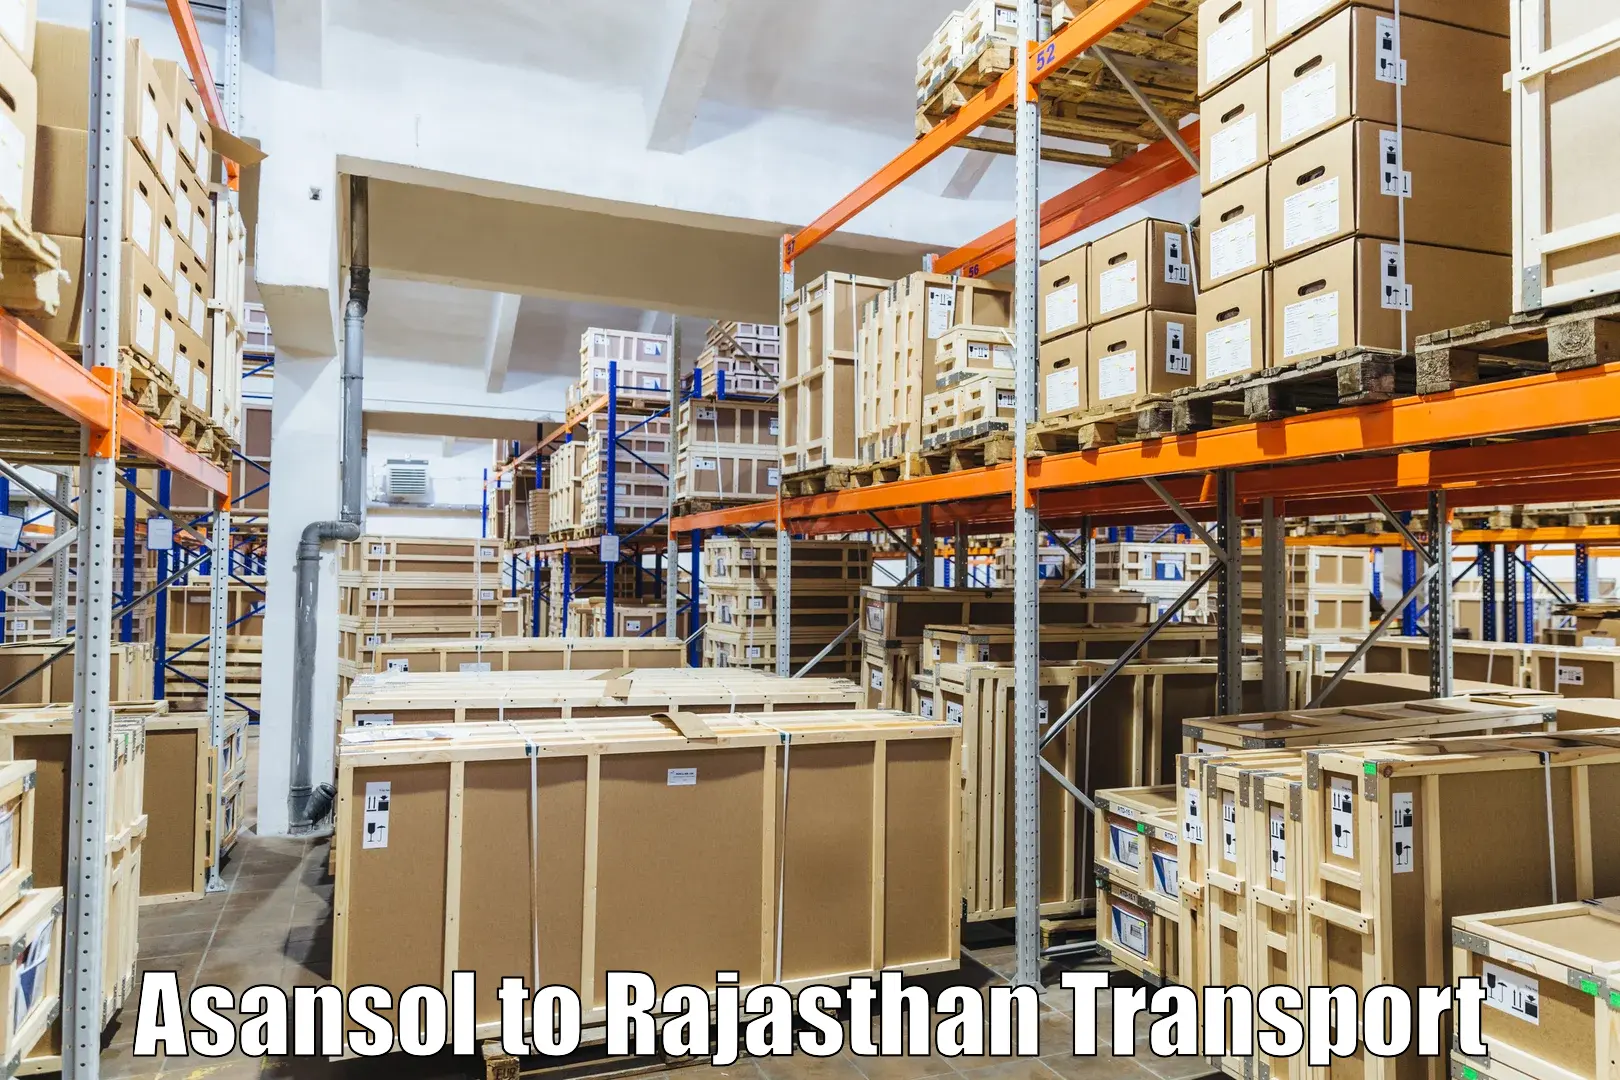 Online transport service Asansol to Bikaner